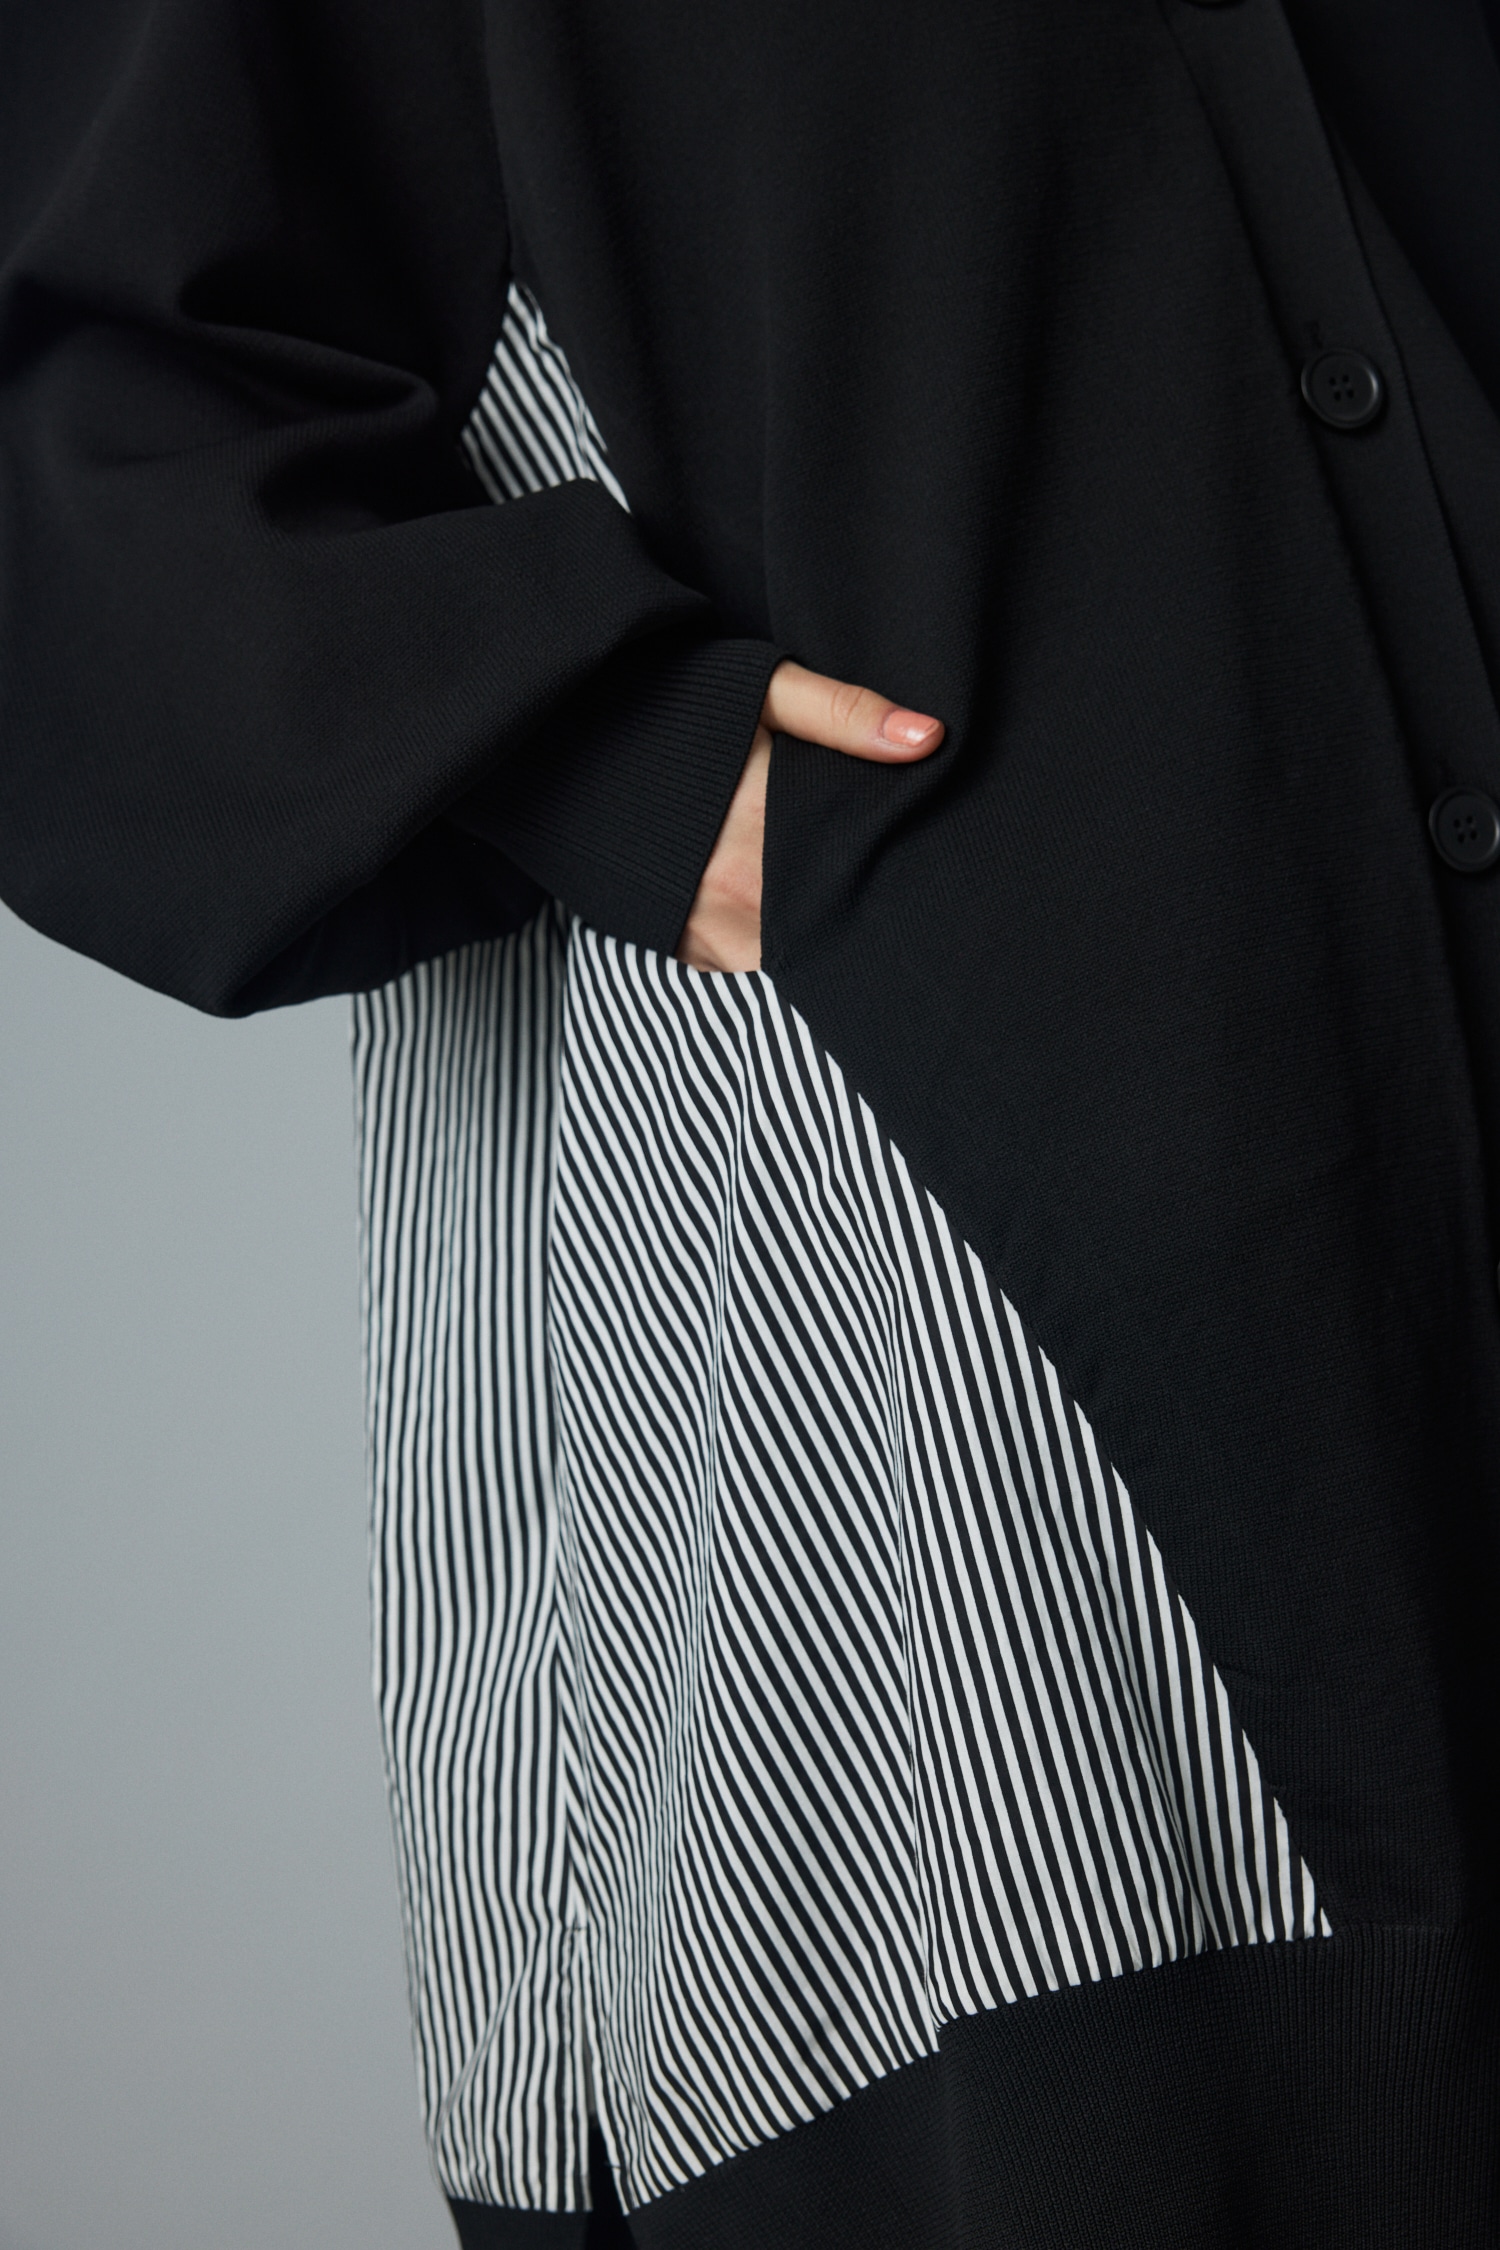 HeRIN.CYE | Wave sleeve long cardigan (ニット ) |SHEL'TTER WEBSTORE